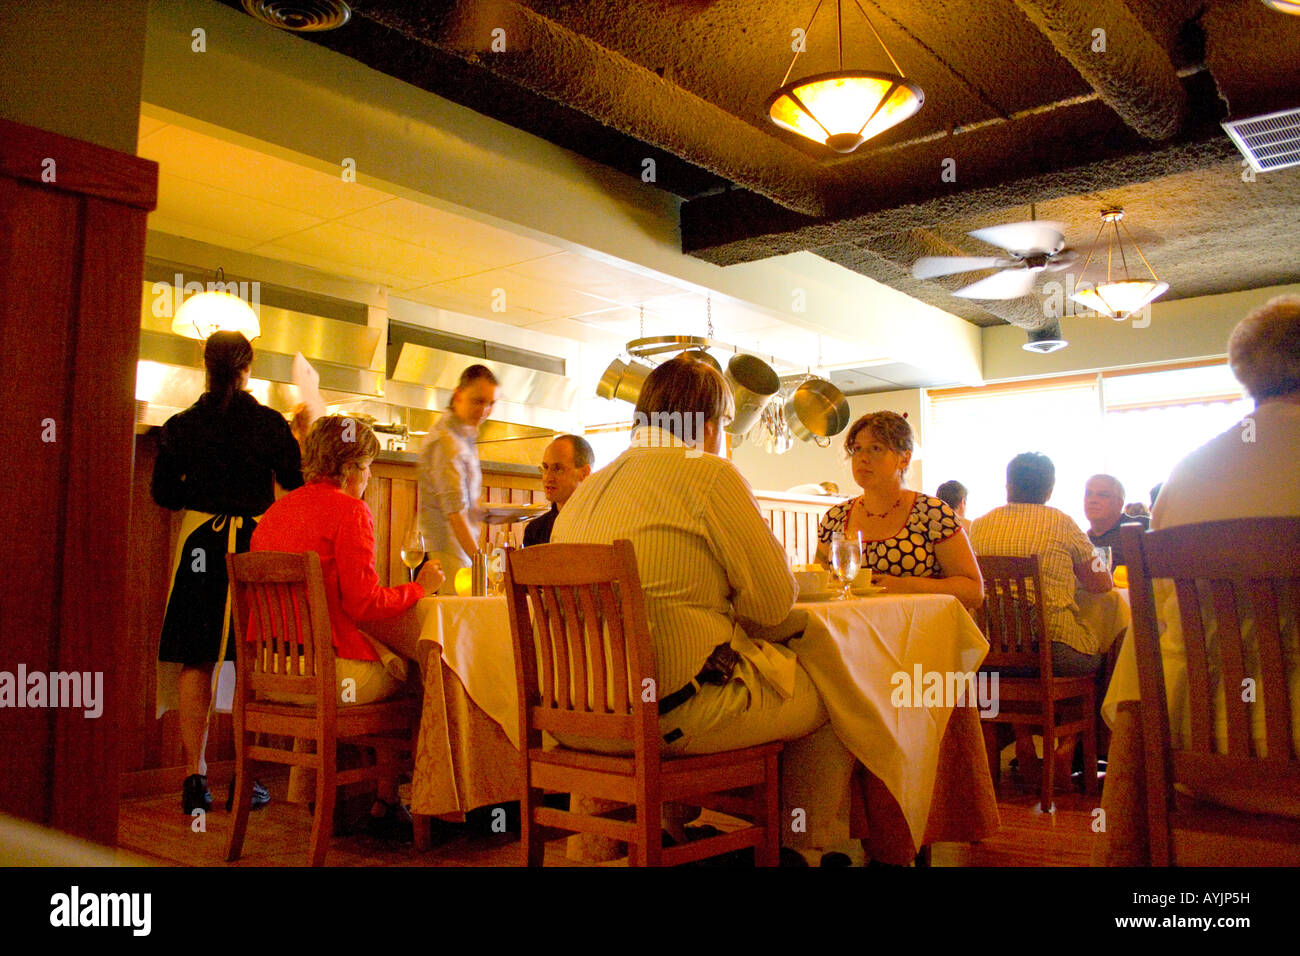 St Paul Minnesota USA Patroni gustando la cucina a Heartland contemporaneo ristorante del Midwest. Foto Stock